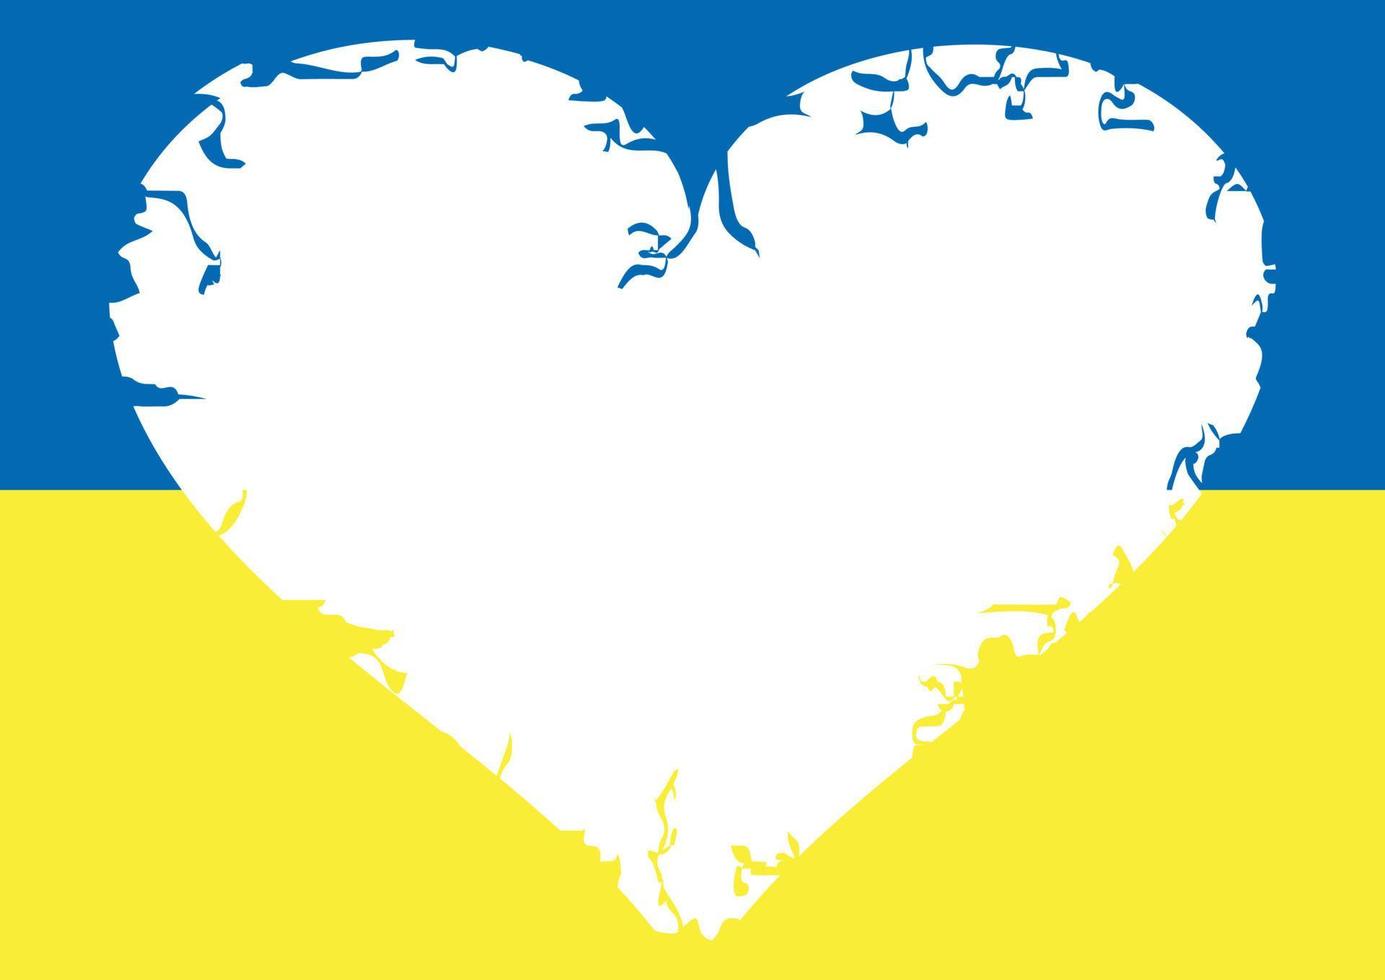 bandera de ucrania. Ilustración de vector de corazón roto